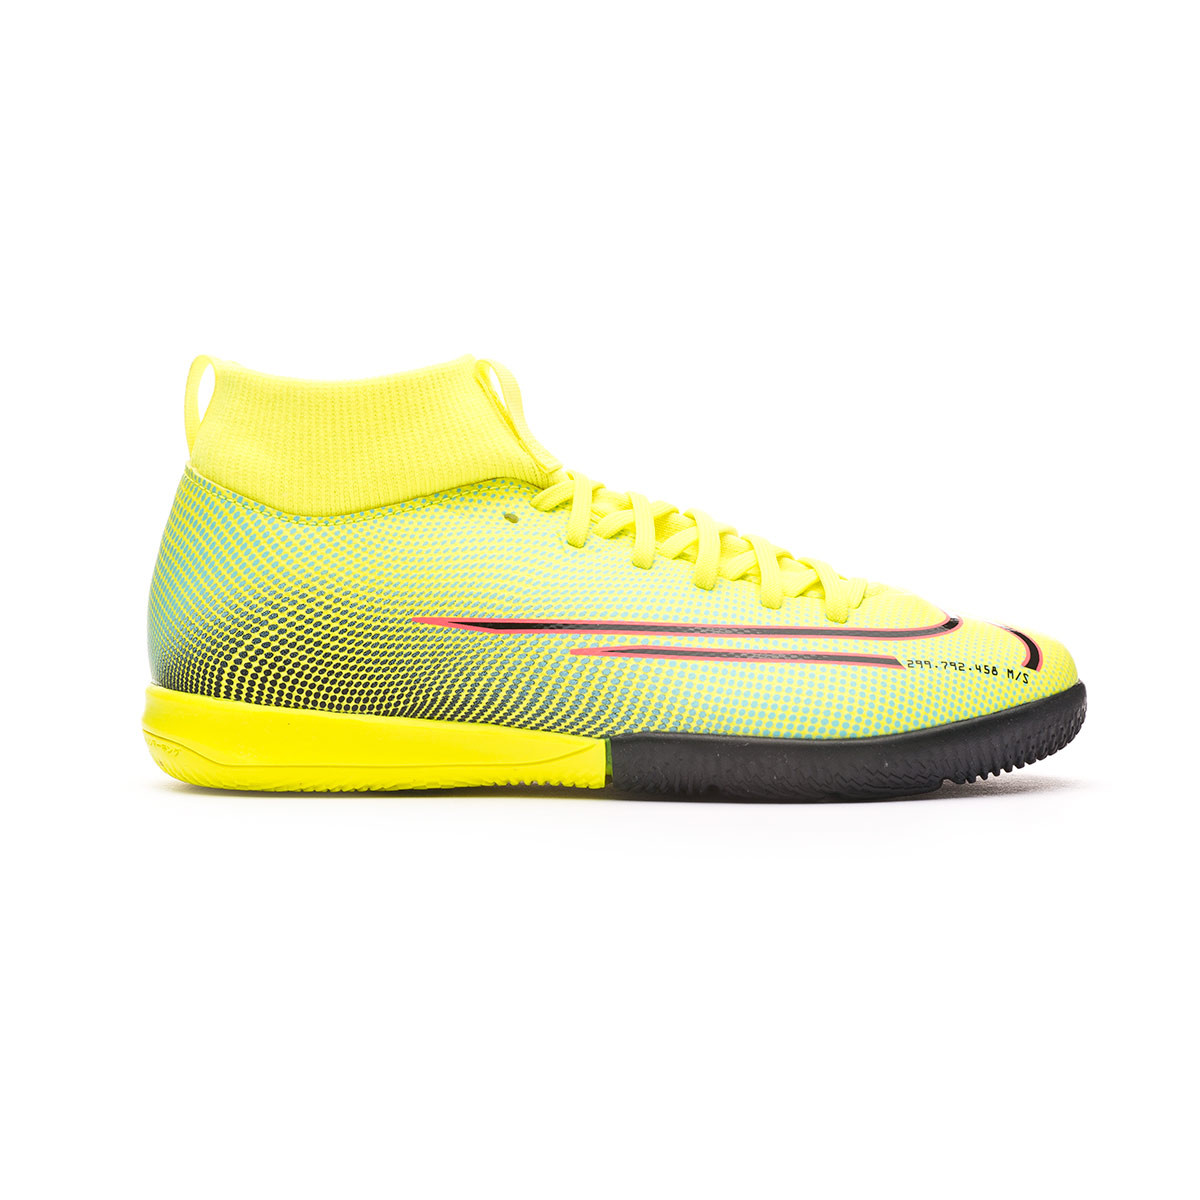 Zapatilla Nike Mercurial Superfly VII Academy MDS 2 IC Niño Lemon  venom-Black-Aurora green - Tienda de fútbol Fútbol Emotion